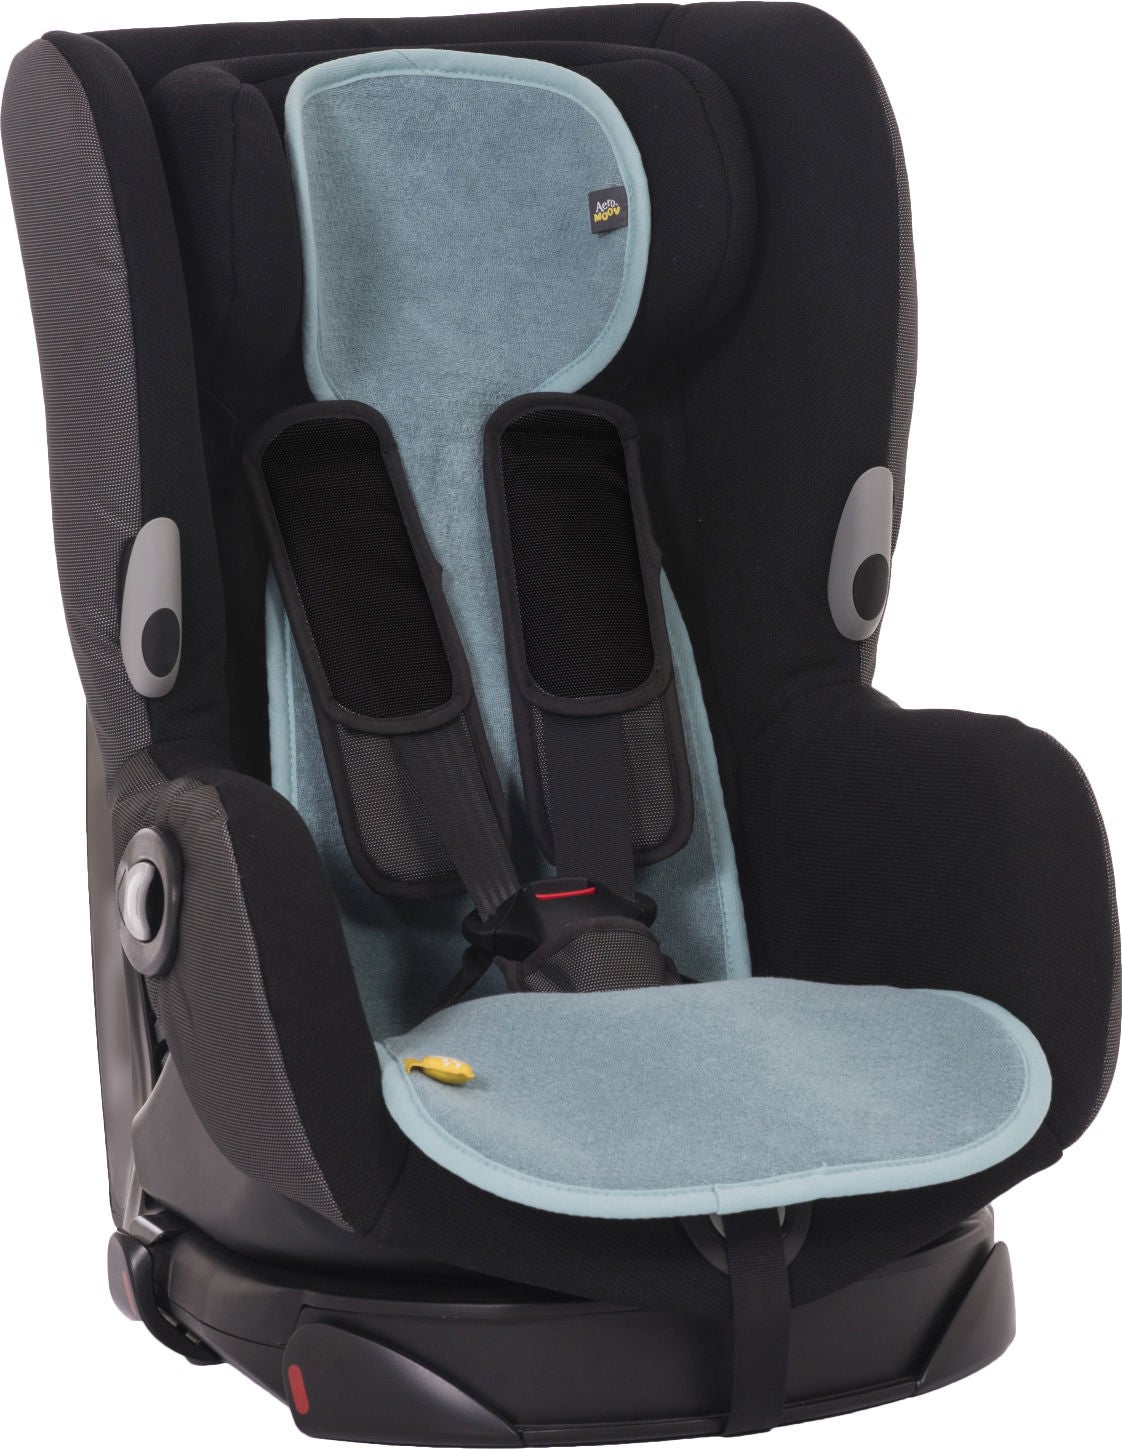 AeroMoov luftdurchlässige Sitzauflage für Kindersitz (9-18 kg), Mint von AeroMoov